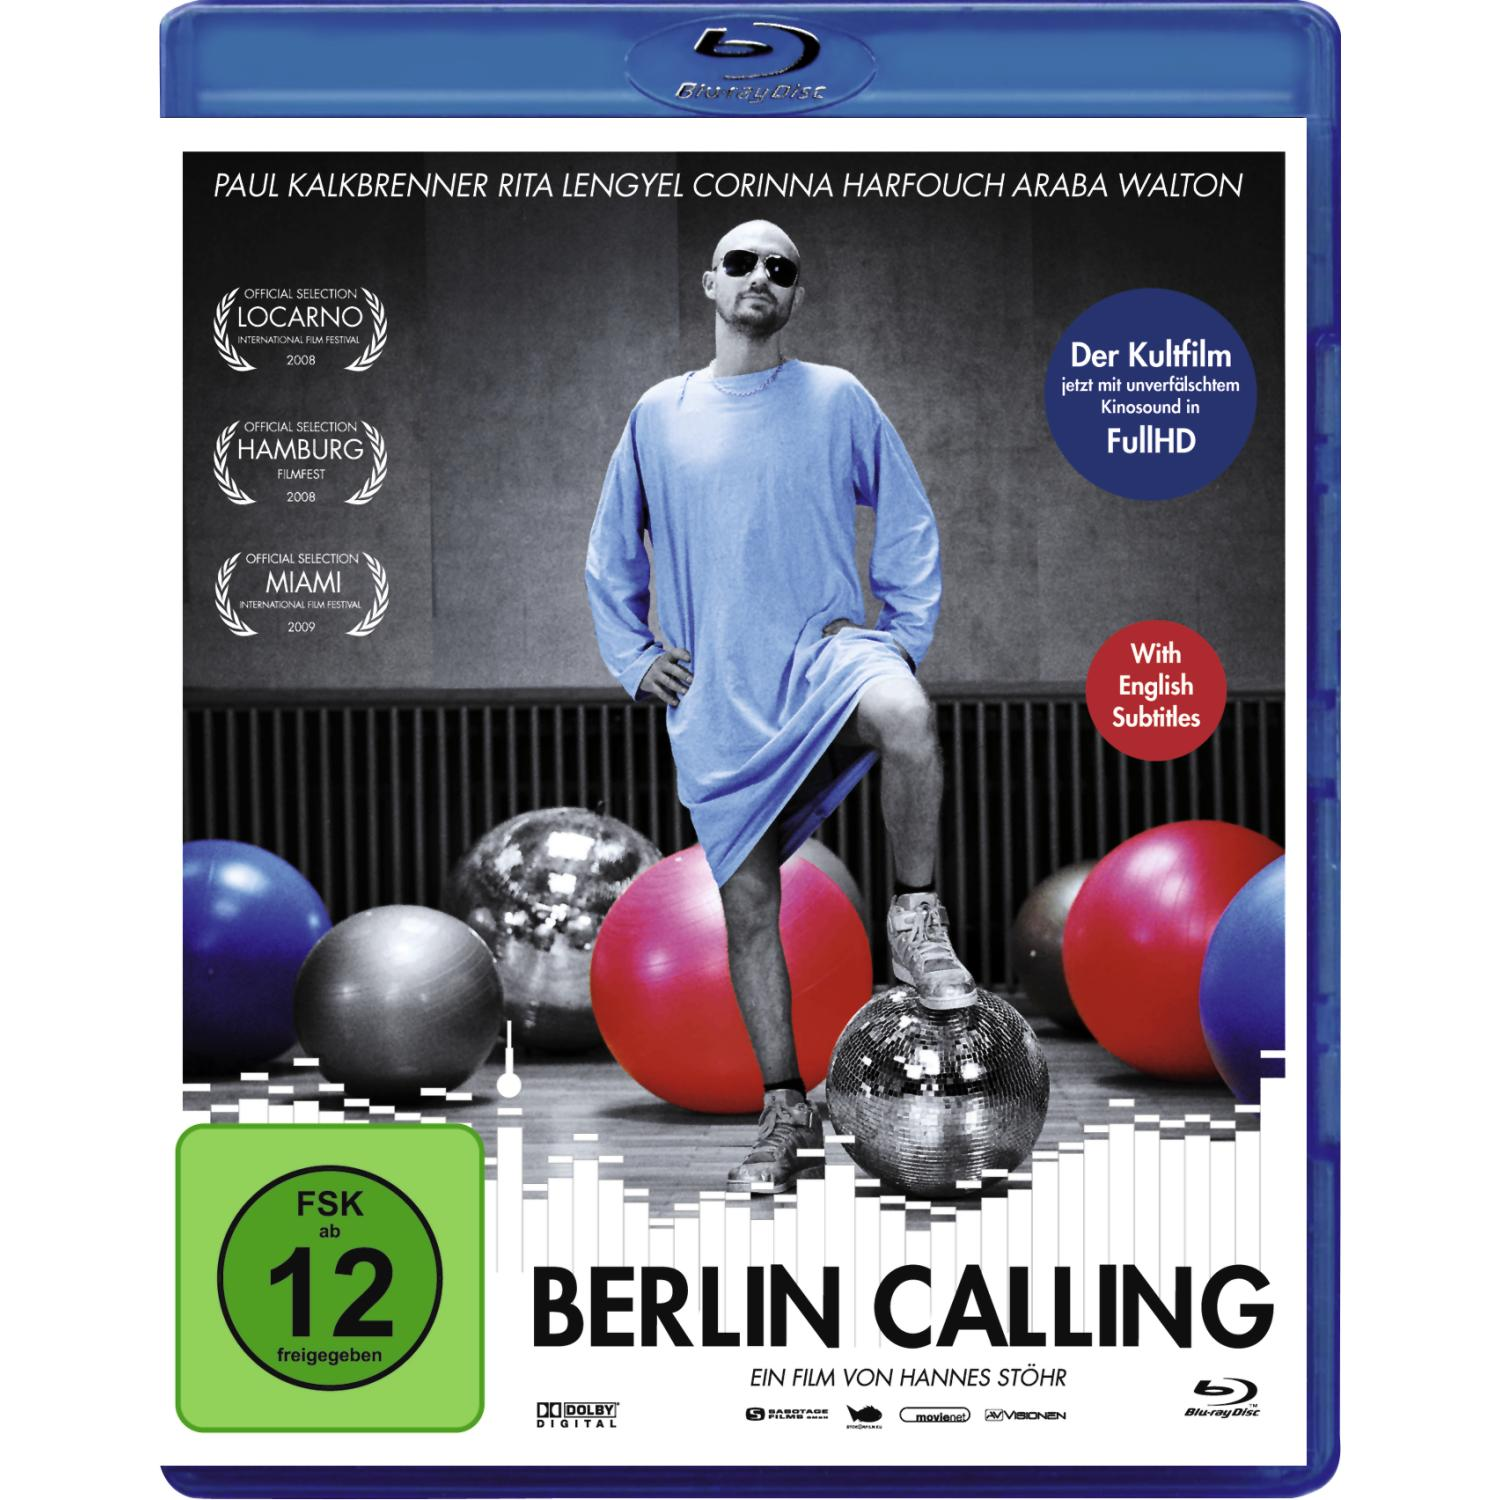 Berlin Calling Blu-ray